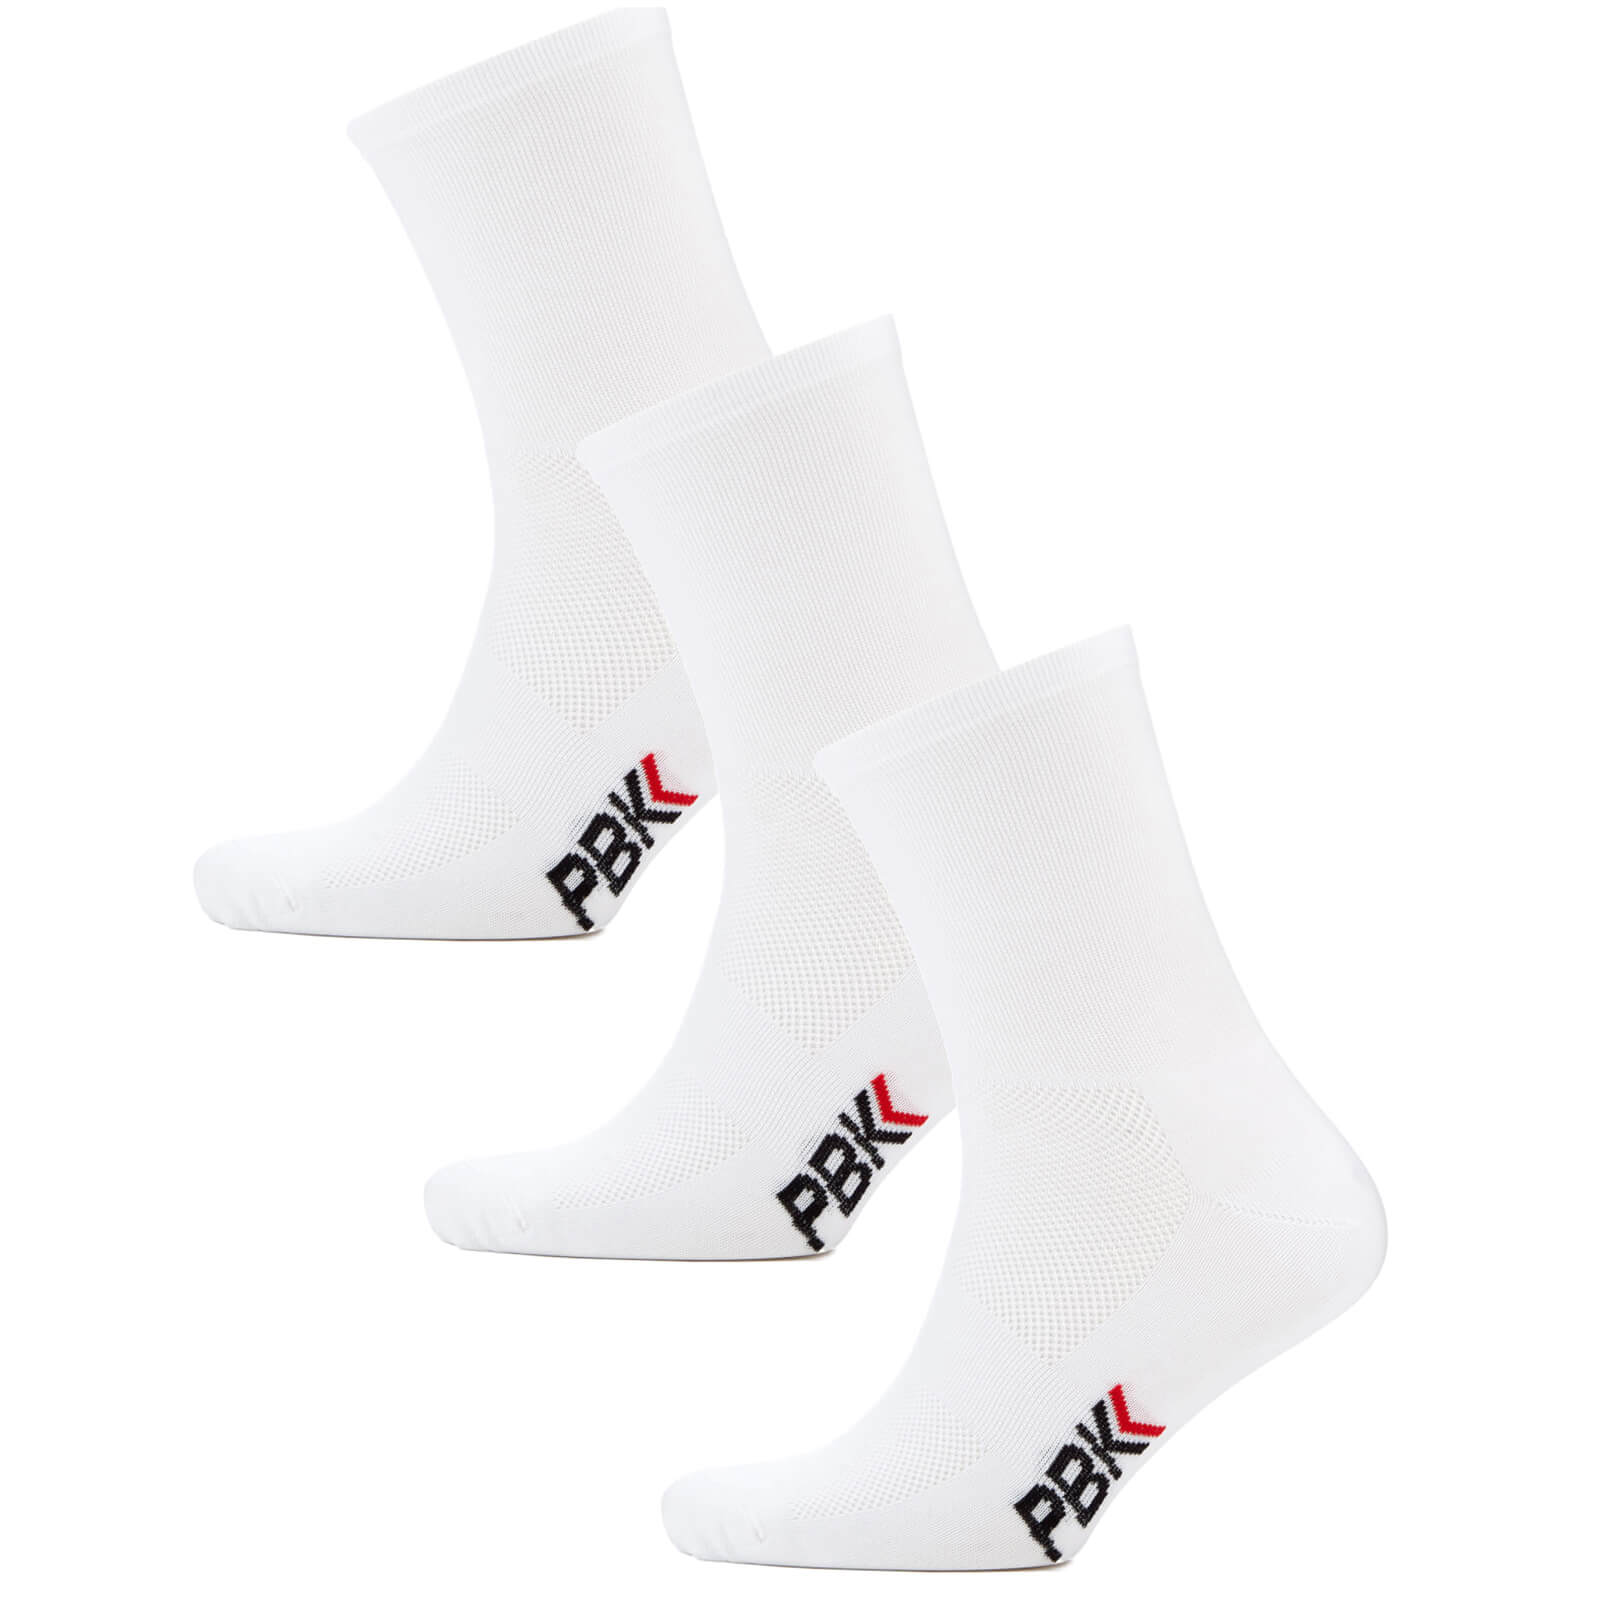 PBK Lightweight Socks Multipack - 3 Pairs - White - S-M - White